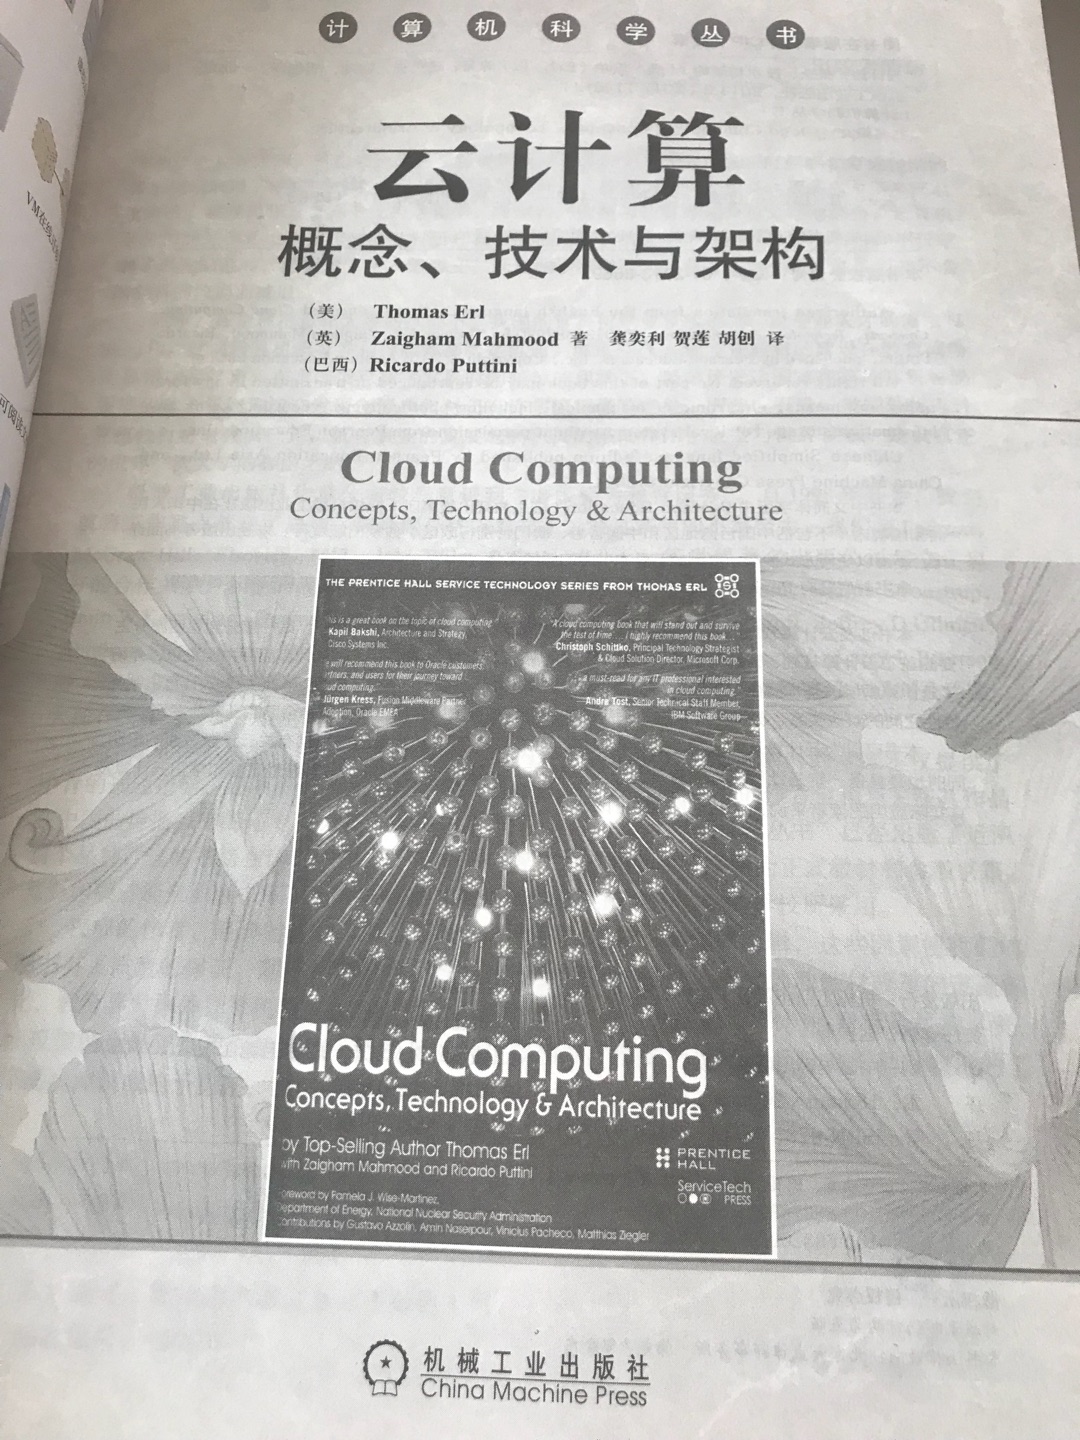 刚到，是正版。最近在学习云计算，所以就买了这本比较基础入门的。之前也买了机械工业出版社的《算法导论》和《TCP/IP详解》，真的很不错。推荐大家买这家出版社的丛书